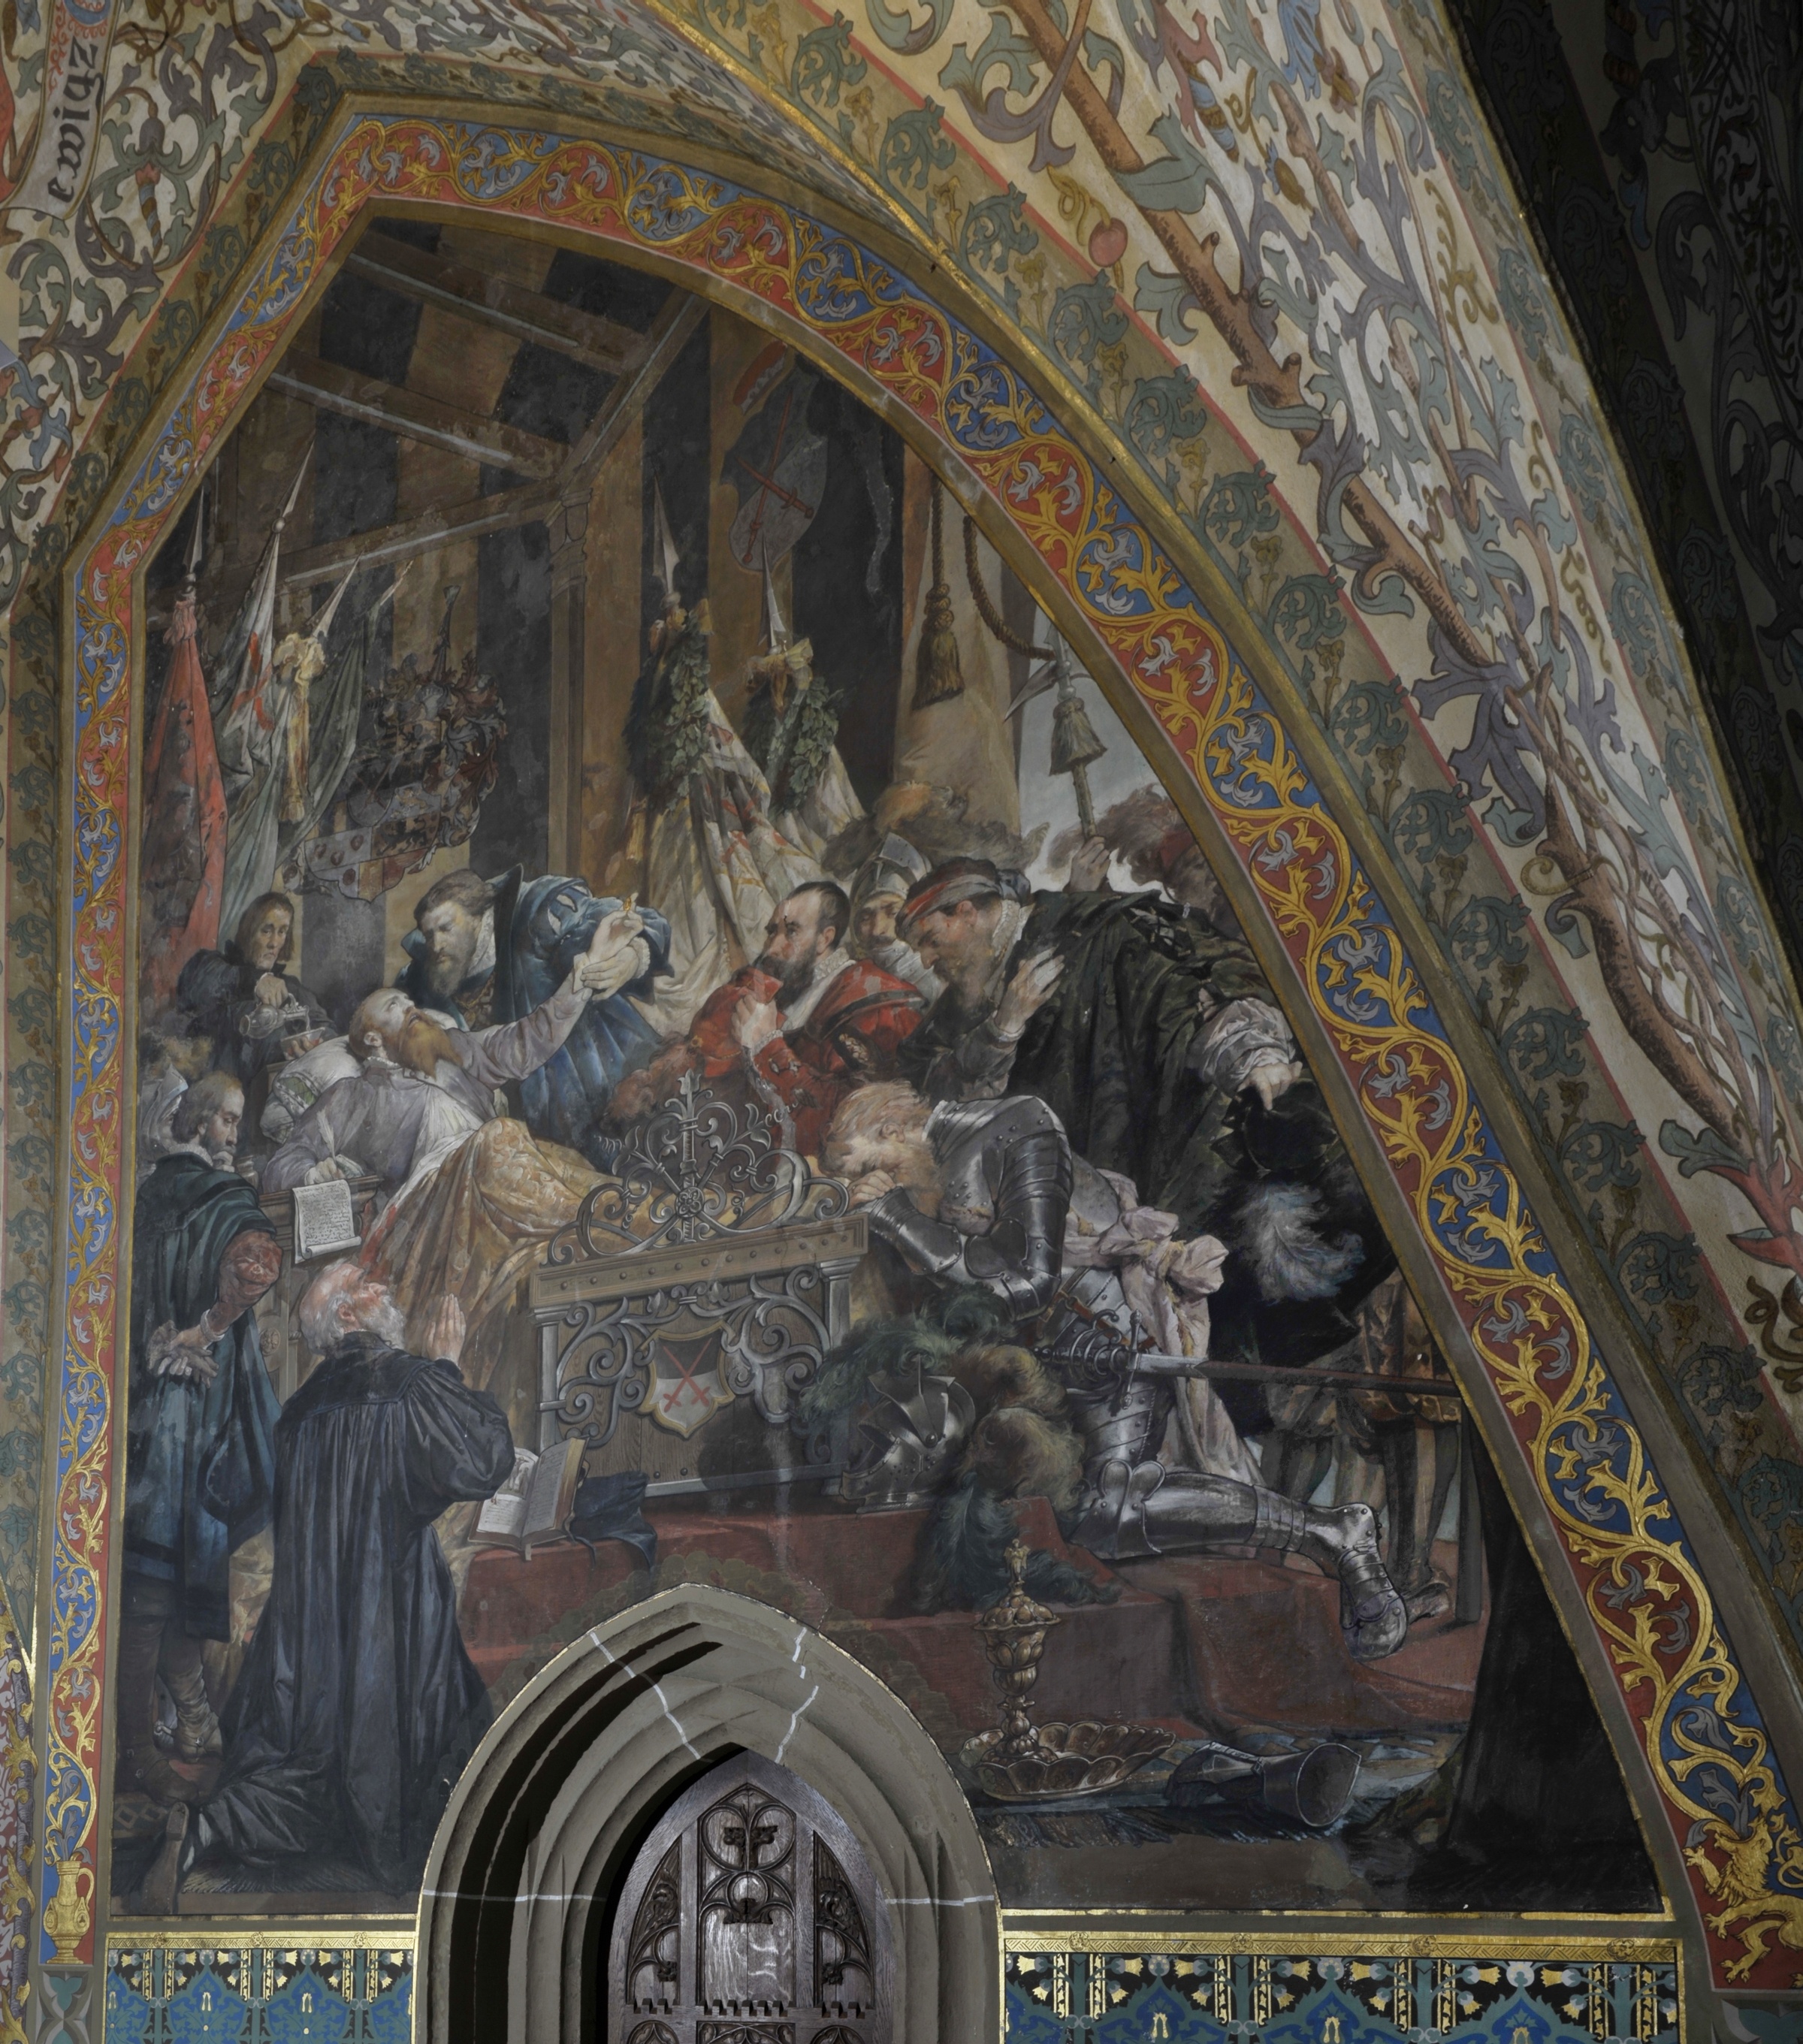 Wandbild:
"Kurfürst Moritz auf
dem Sterbebett nach
der Schlacht bei
Sievershausen im Jahr 1553" (SBG gGmbH CC BY-NC-SA)